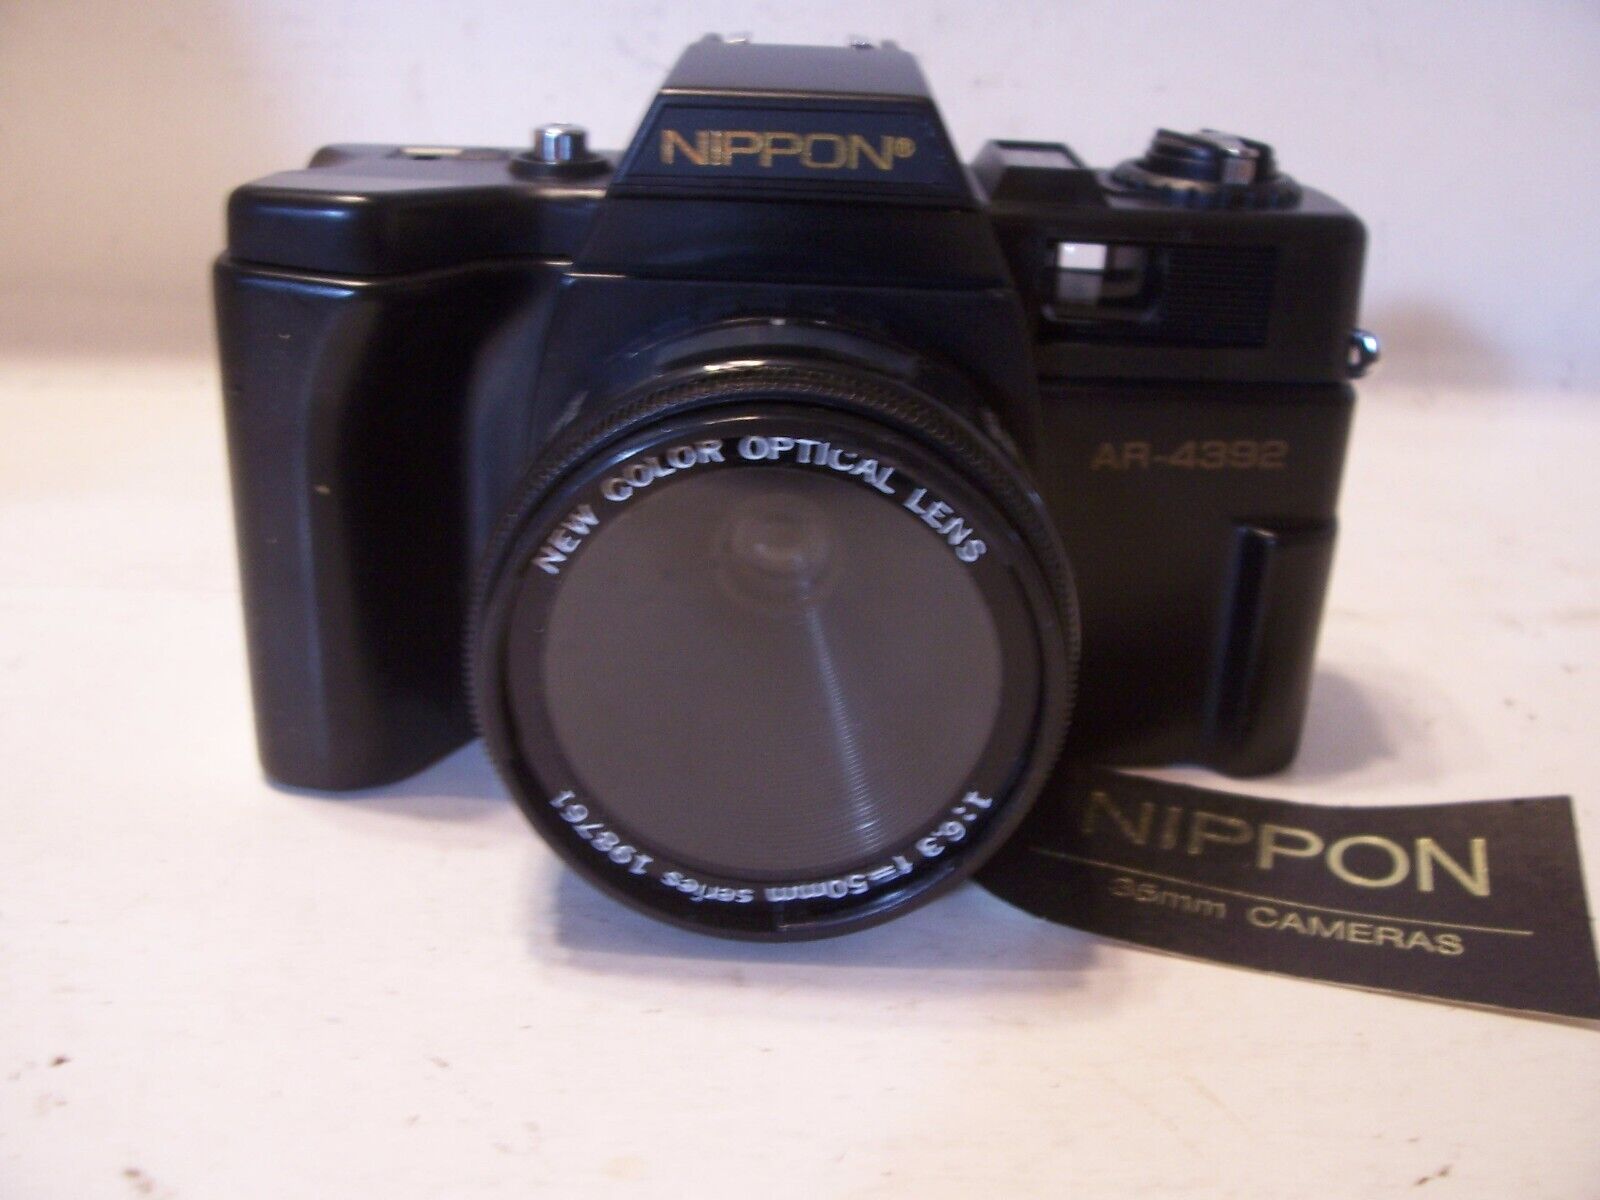 NEW Vintage Film 35mm Camera Nippon AR-4392F w/ Case, Strap, Sun Shade, Lens Cap Nippon ar 4392F - фотография #11